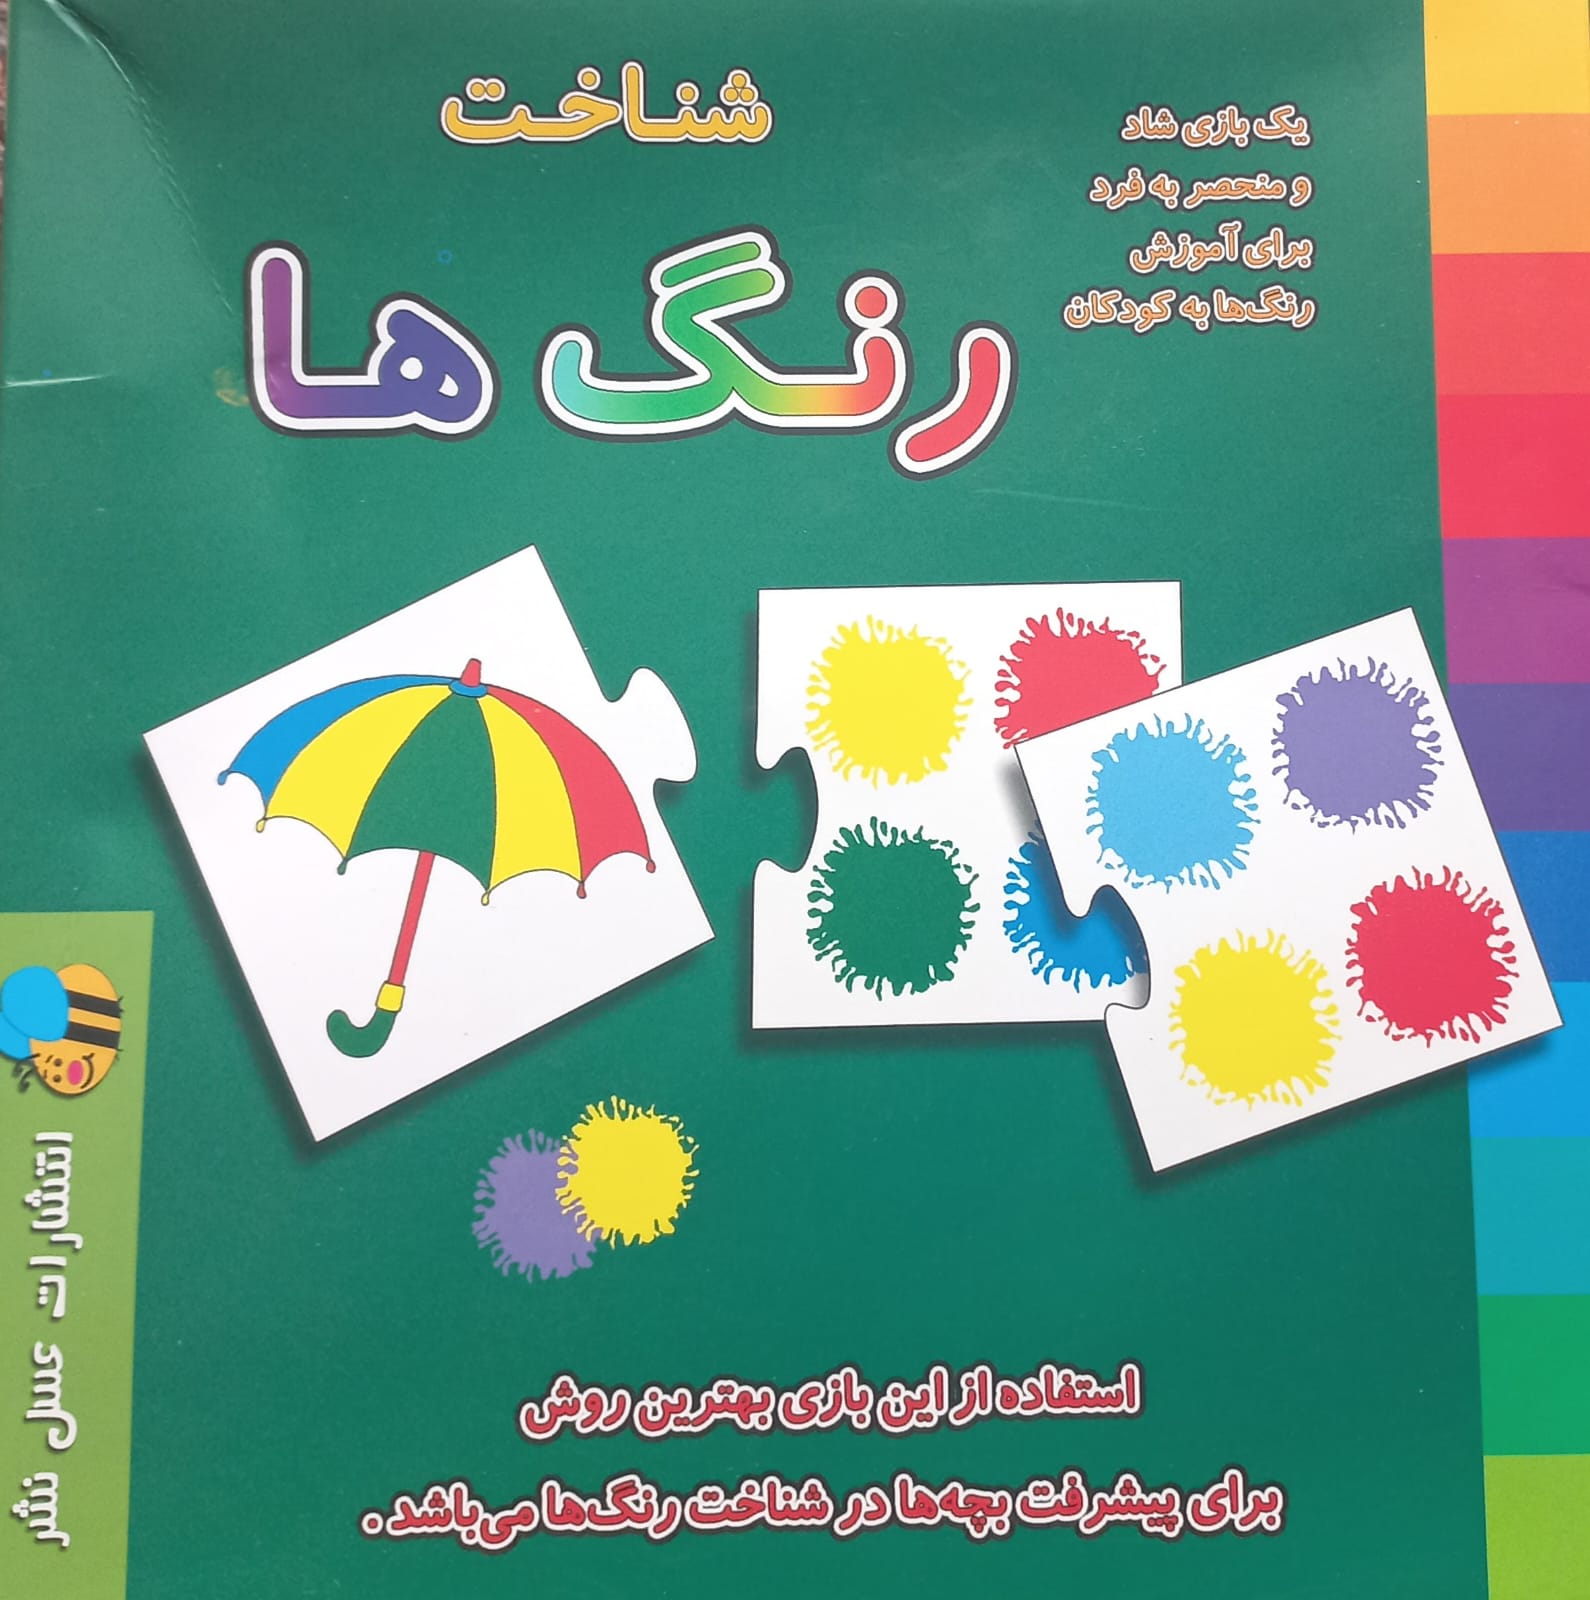 کتاب شناخت رنگ  نوشته ٖٖدر این بازی بچه ها باید کارت تصویر را به کارت رنگ مربوط به آن تصویر متصل کنند